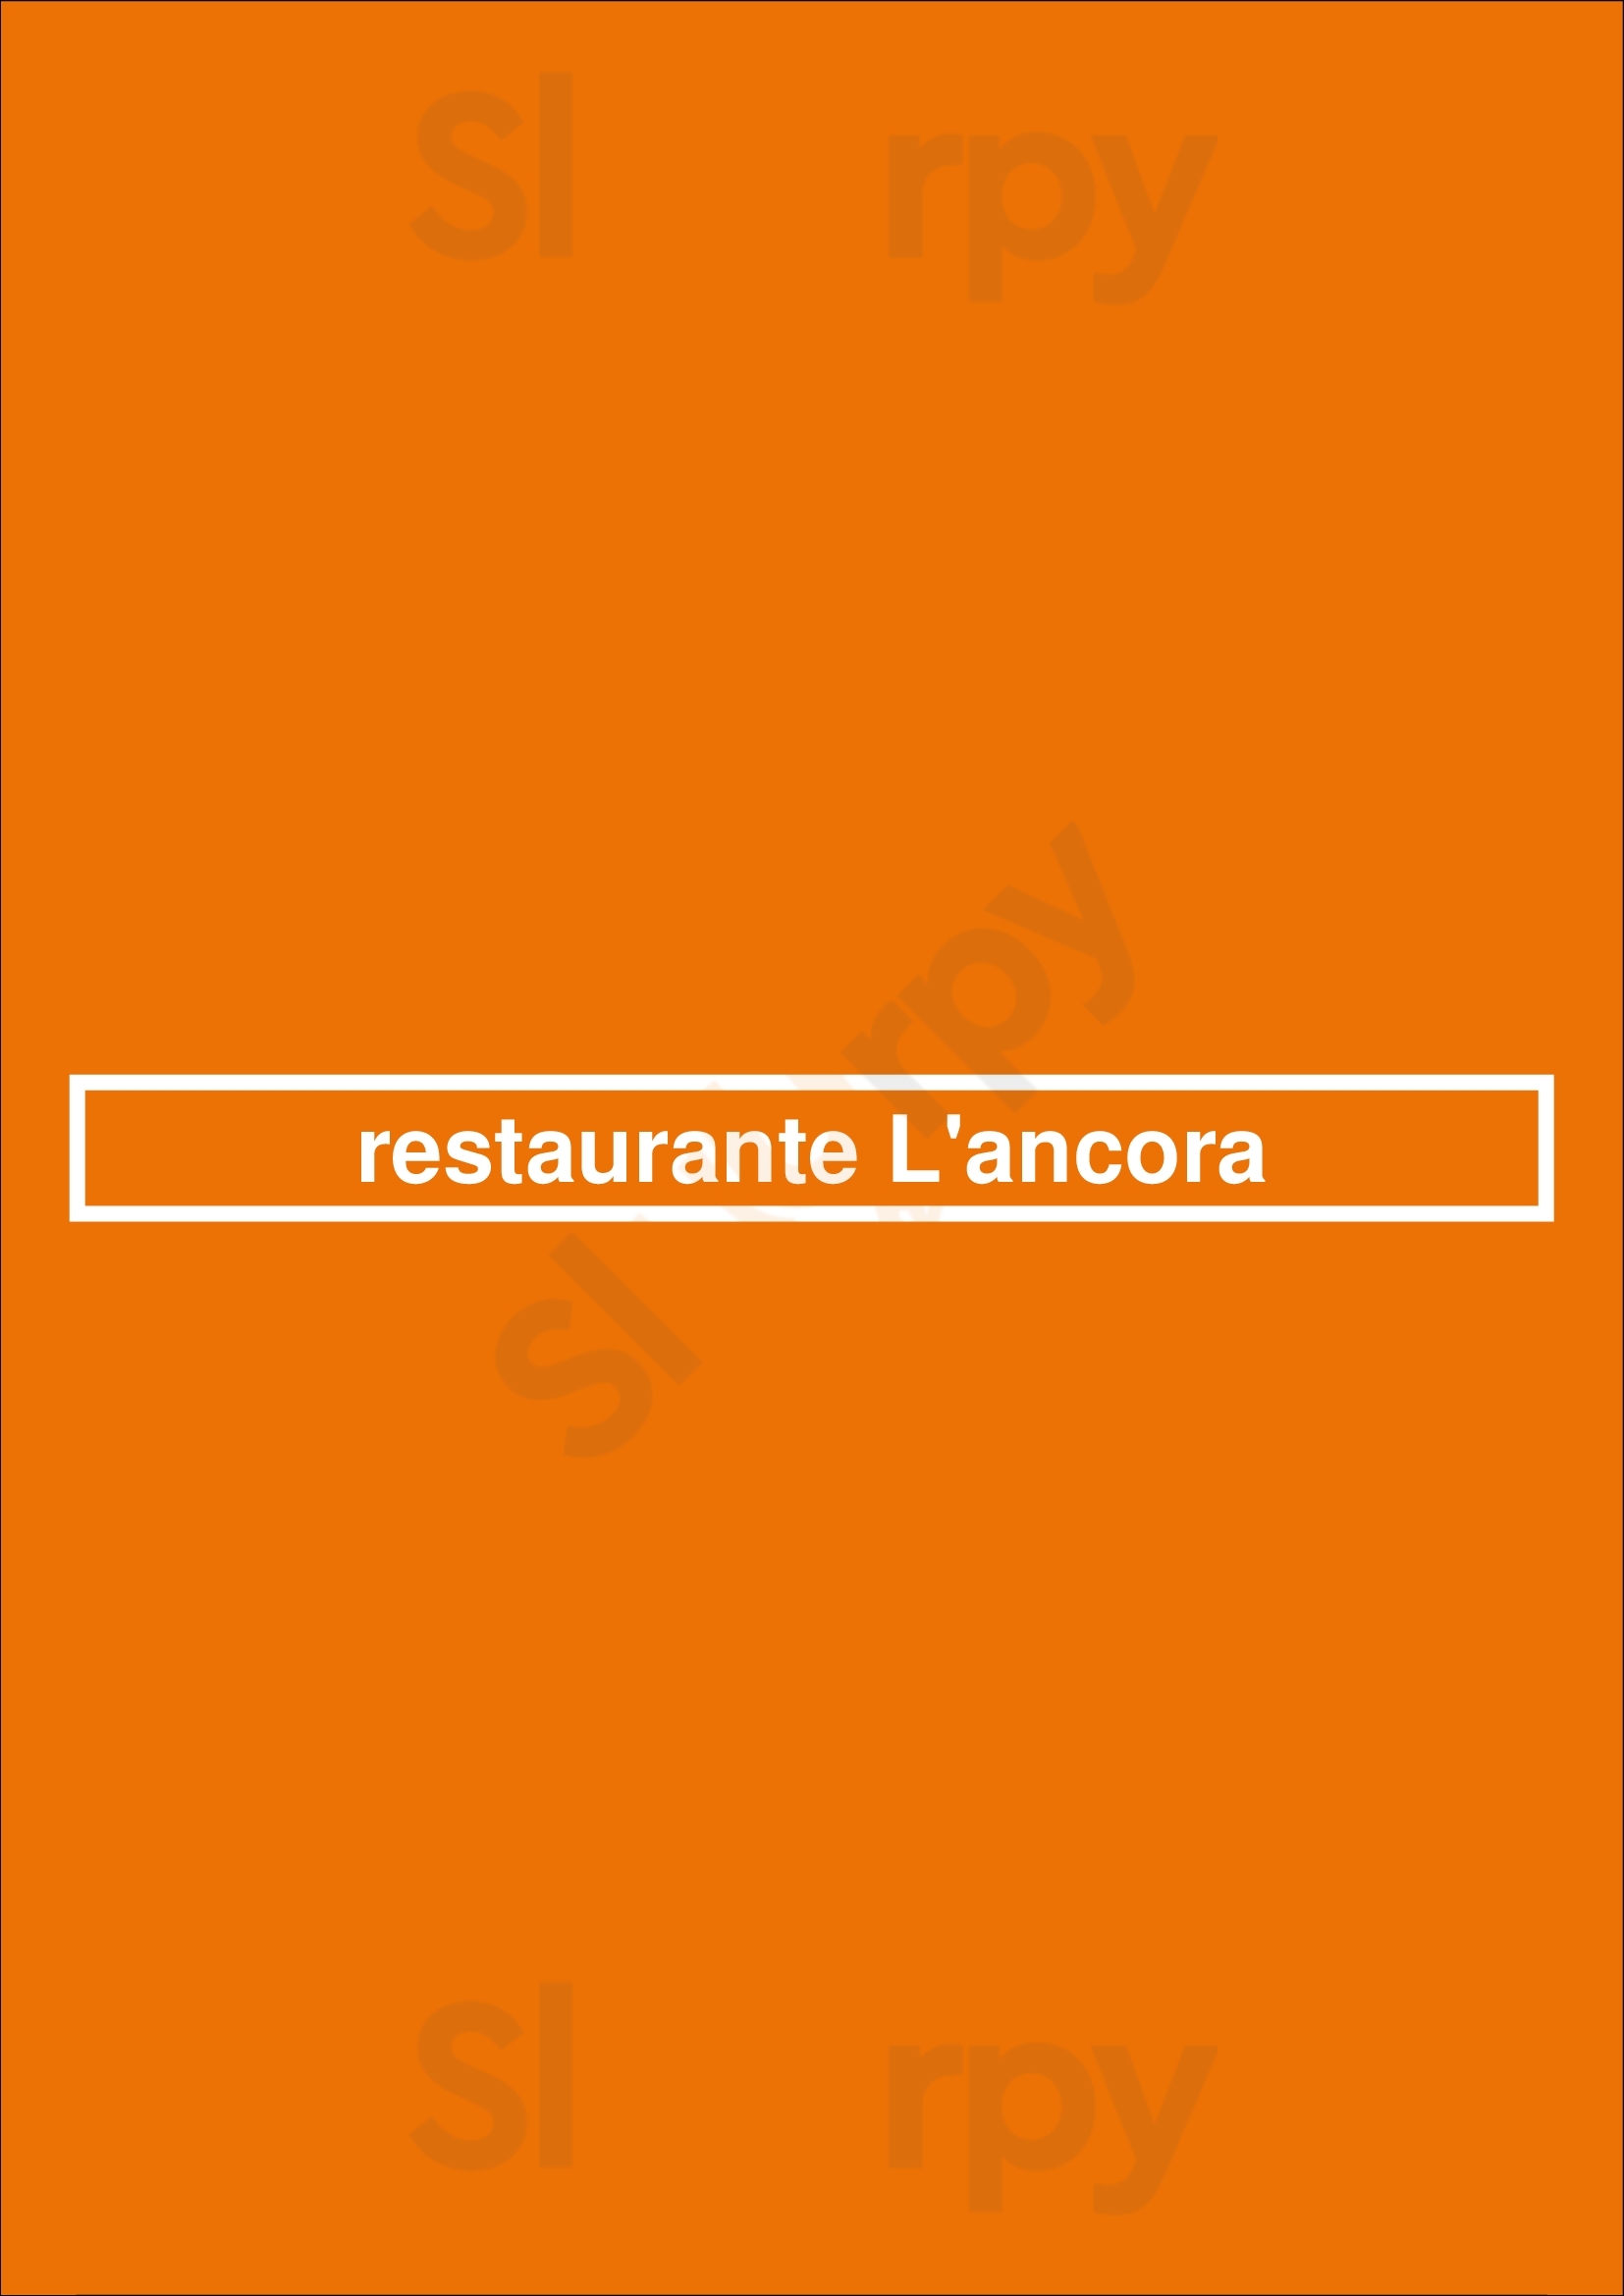 Restaurante L'ancora La Pobla de Farnals Menu - 1